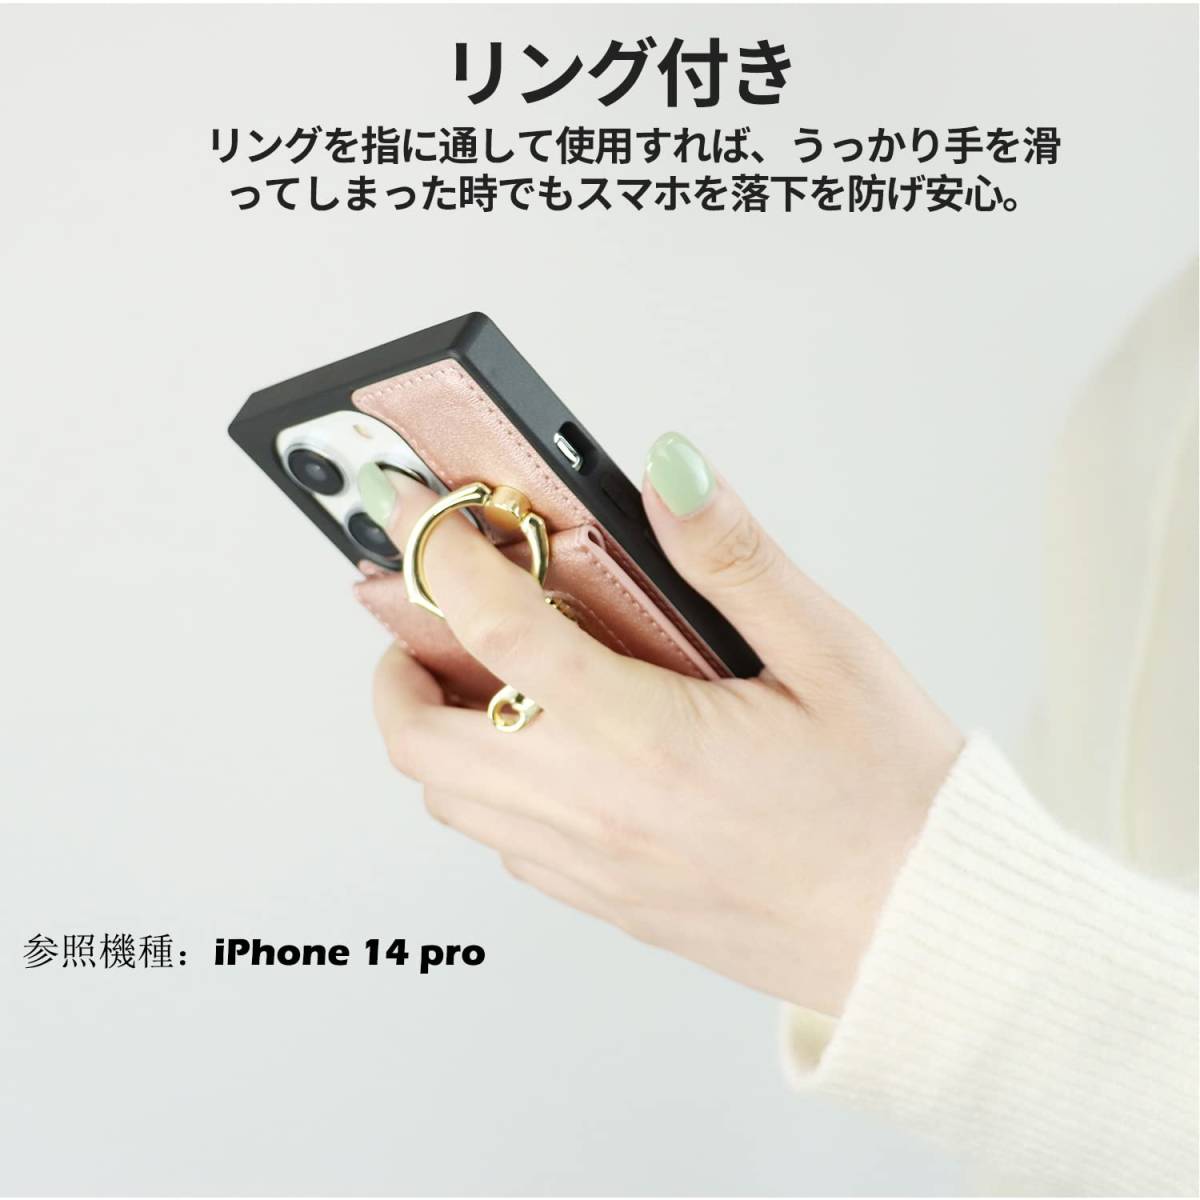 【新着商品】iPhoneSE2スマホケース 背面ポケット付き ミラー付き ケースショルダー 携帯ストラップ 肩掛け 斜めがけ iP_画像3